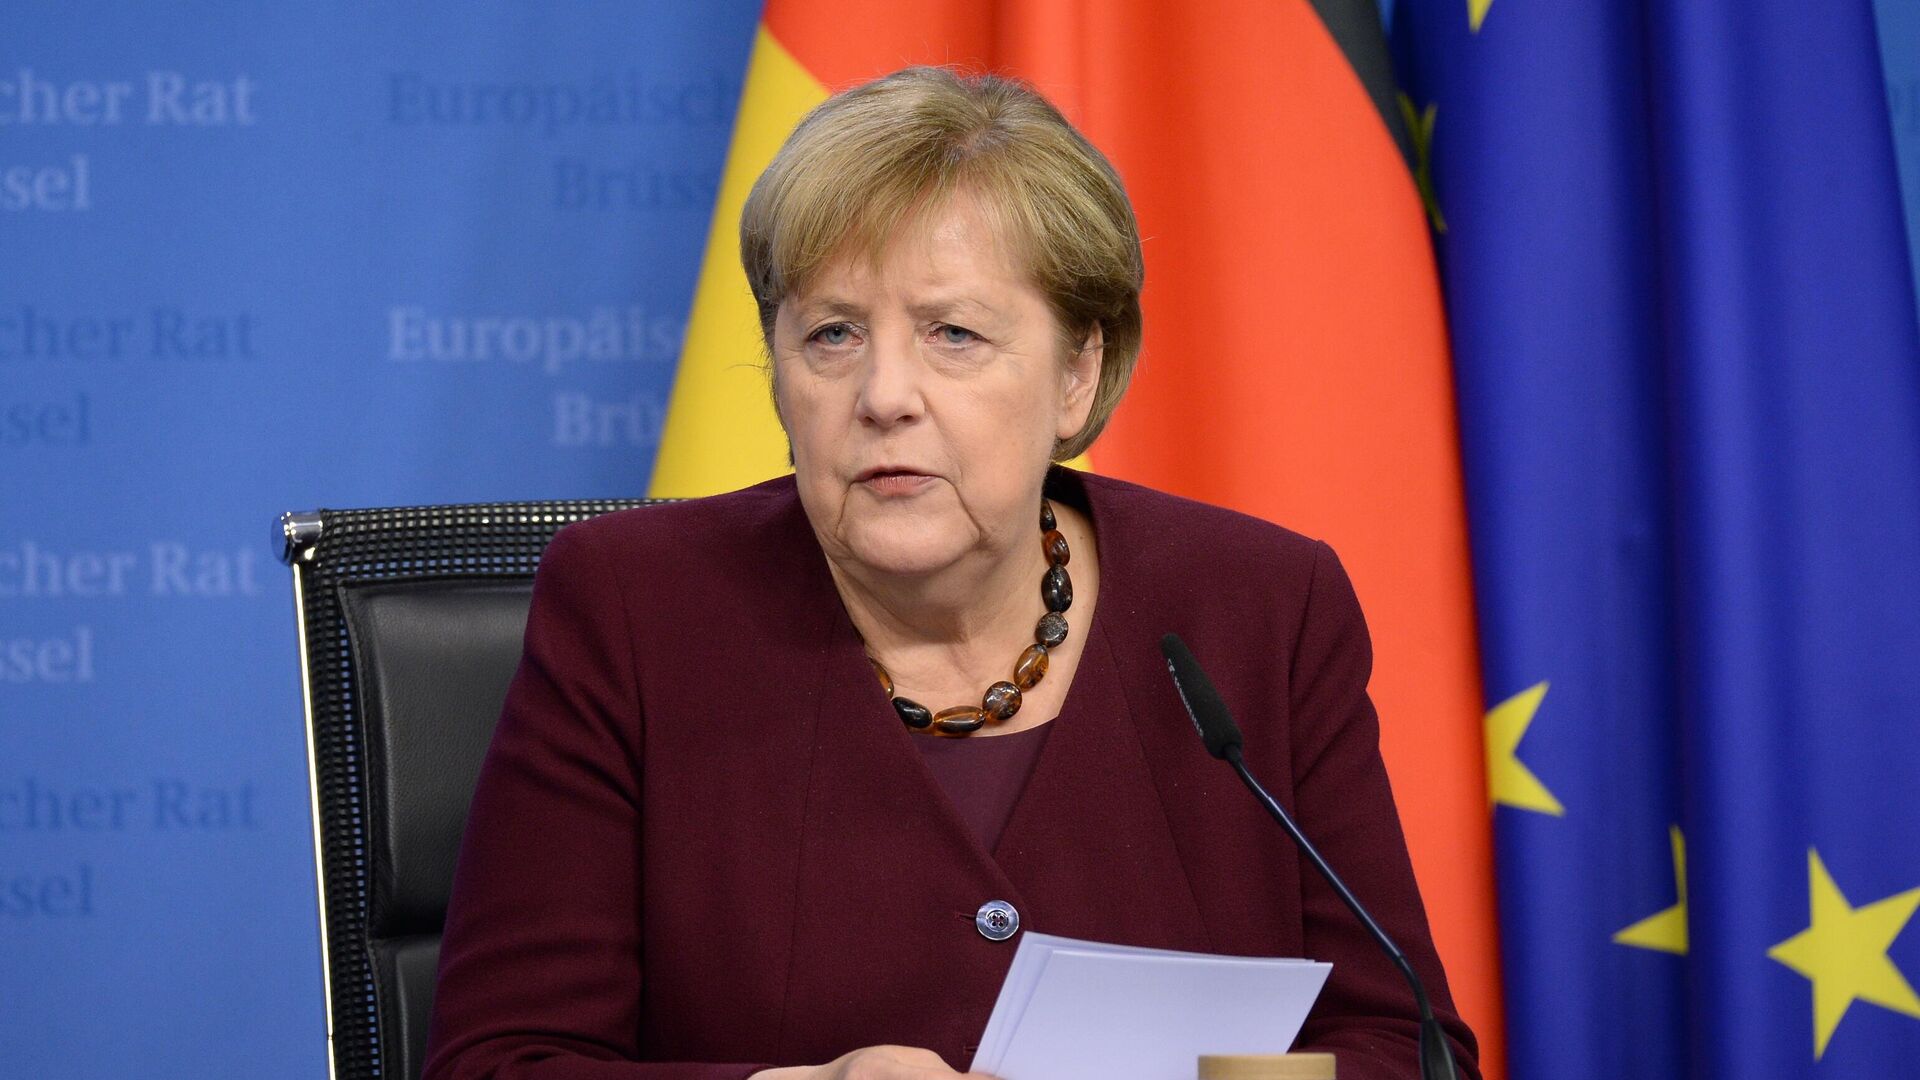 Меркель высказалась о роли газа в переходе к зеленой энергетике